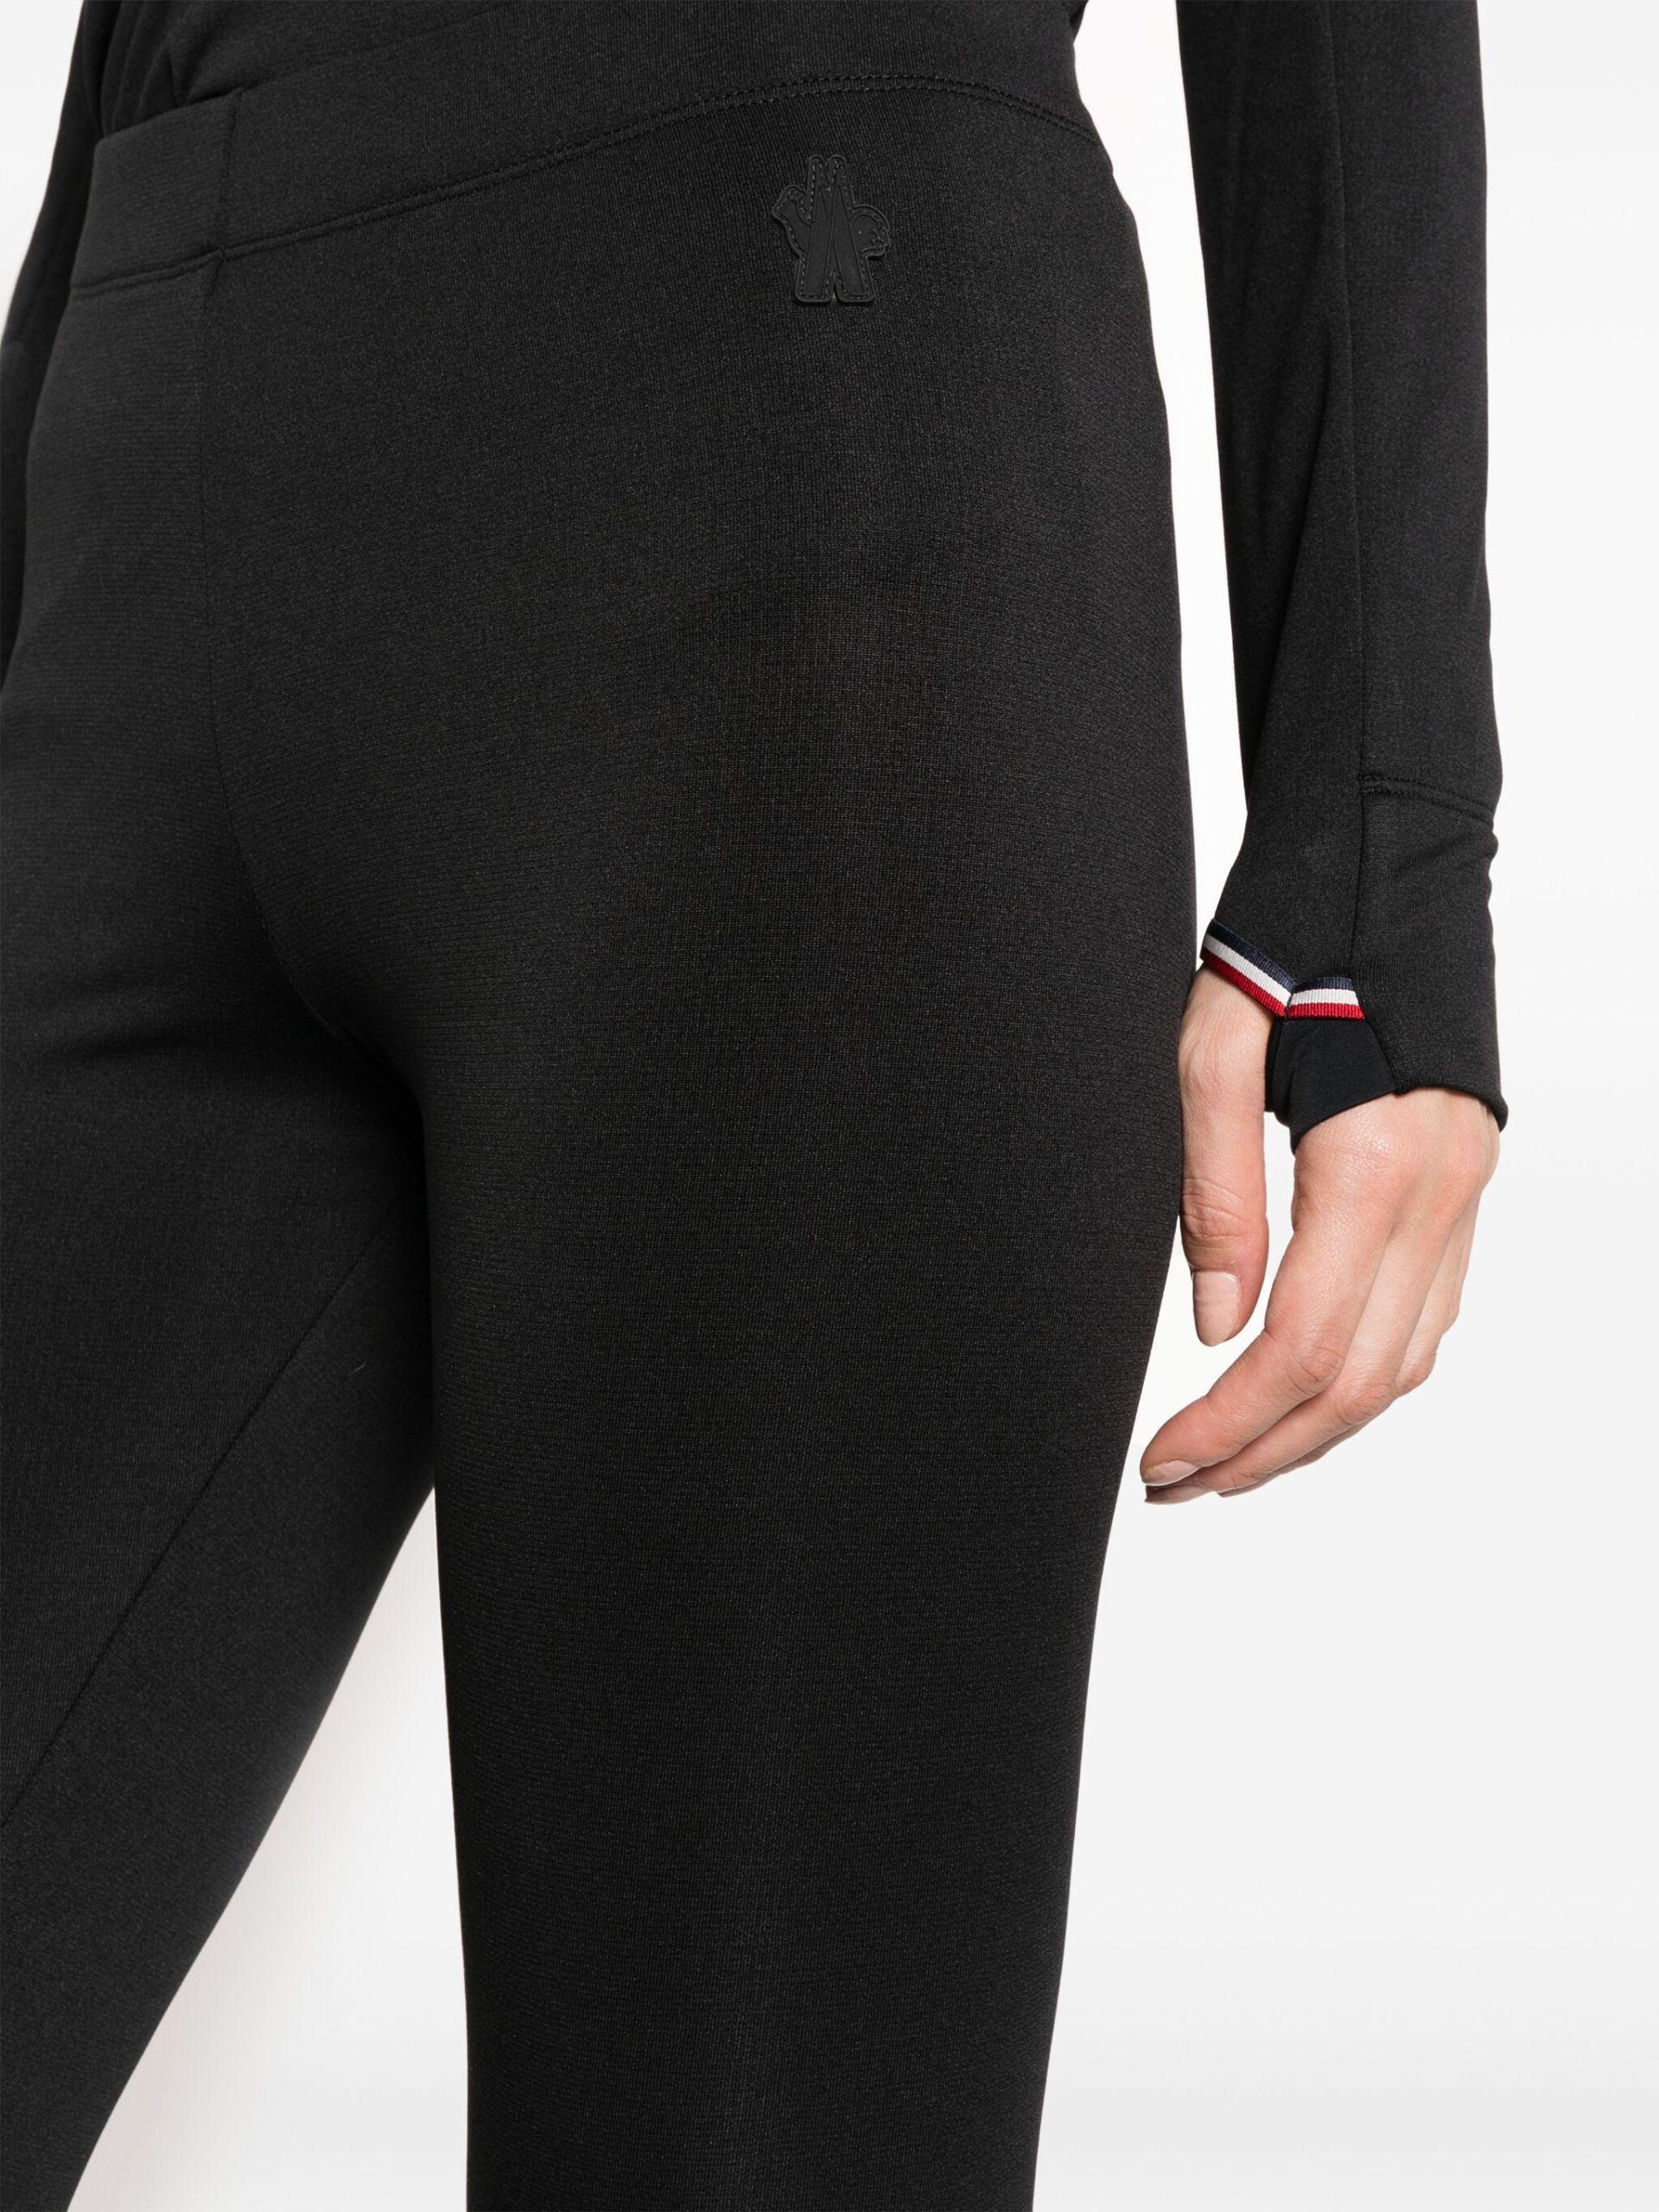 3 MONCLER GRENOBLE Base Layer leggings - Women's - Polyester/elastane in  Black